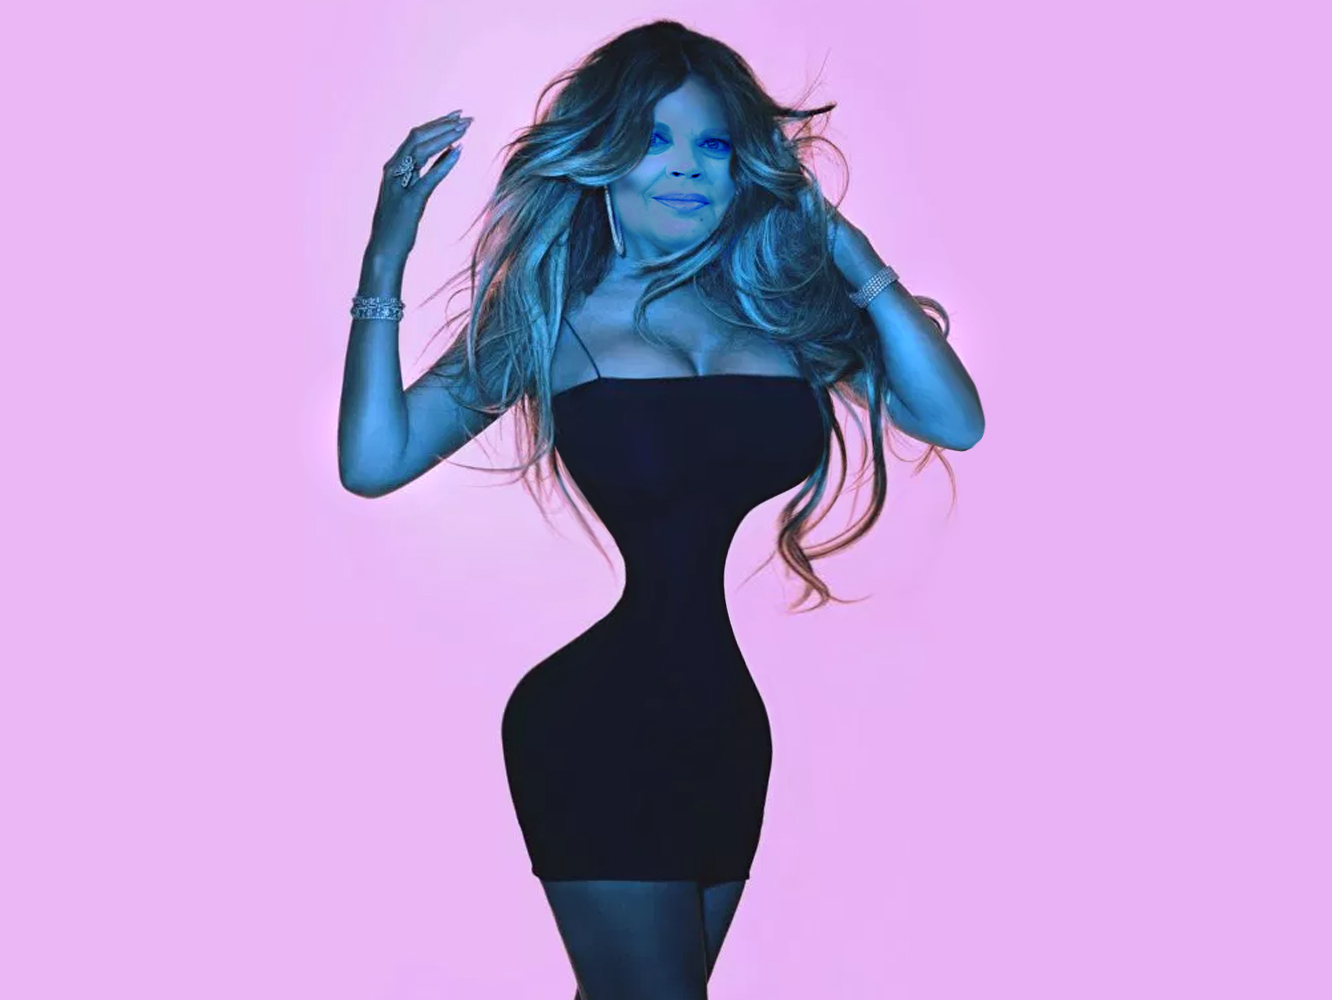  Mariah Carey lanzará el remix de ‘A No No’ que nadie jamás le pidió